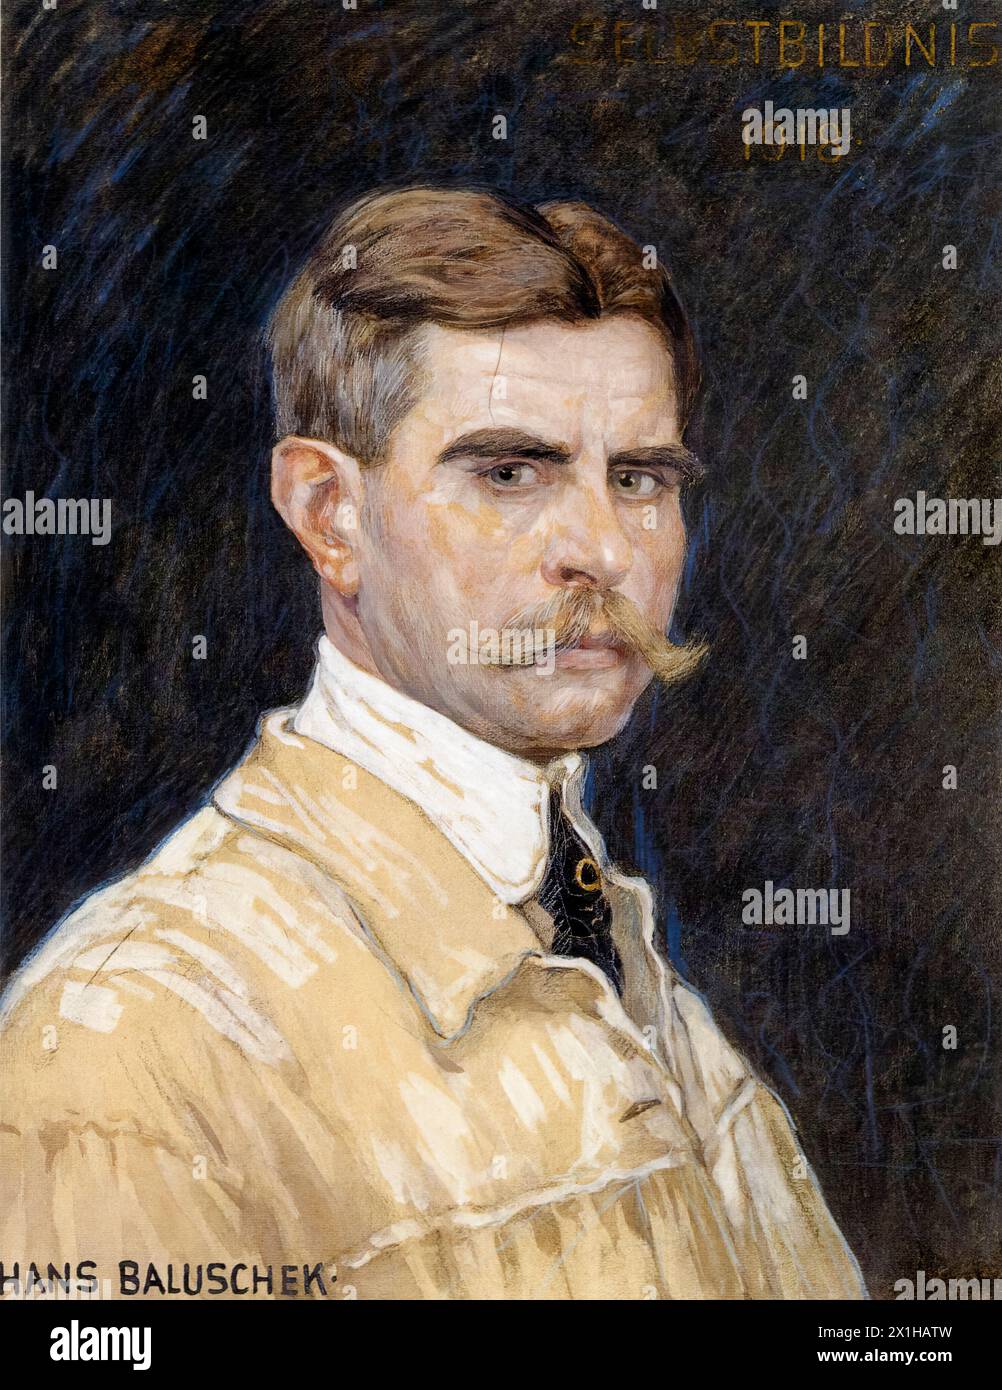 Hans Baluschek (1870-1935), Autoportrait du peintre réaliste allemand à l'aquarelle et au pastel, 1918 Banque D'Images